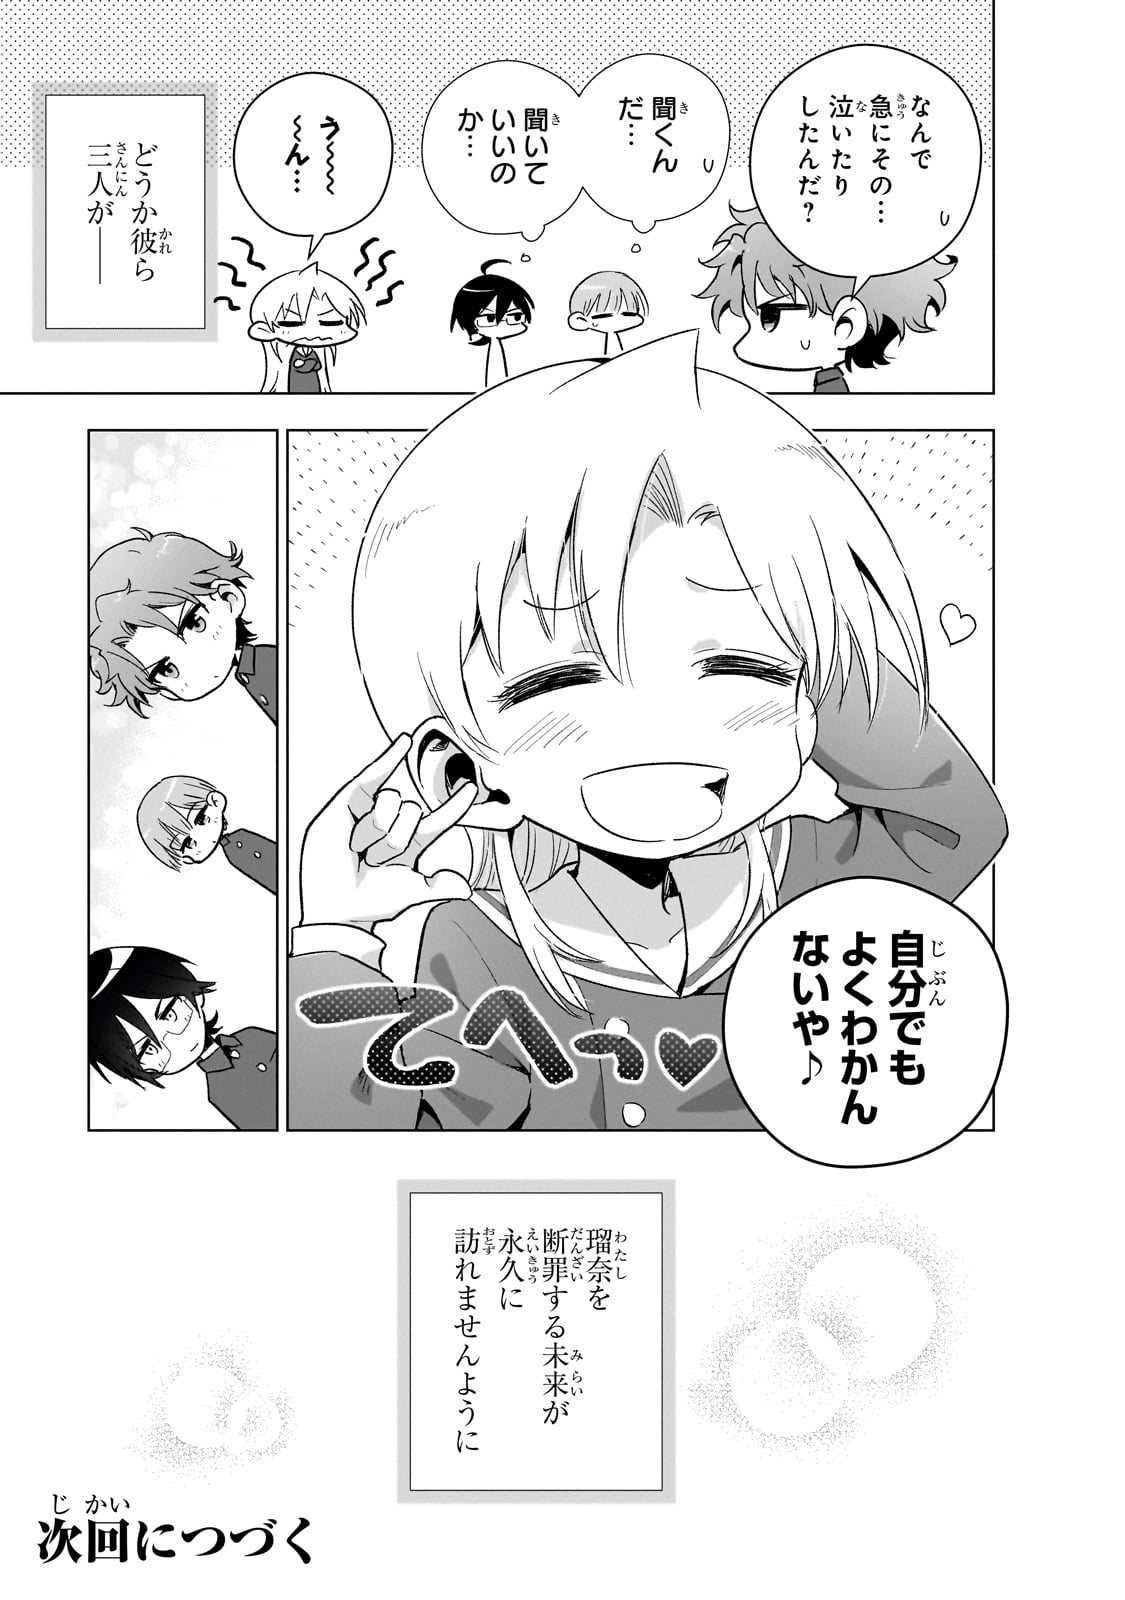 Gendai Shakai de Otome Game no Akuyaku Reijou wo suru no wa Chotto Taihen - Chapter 14 - Page 23